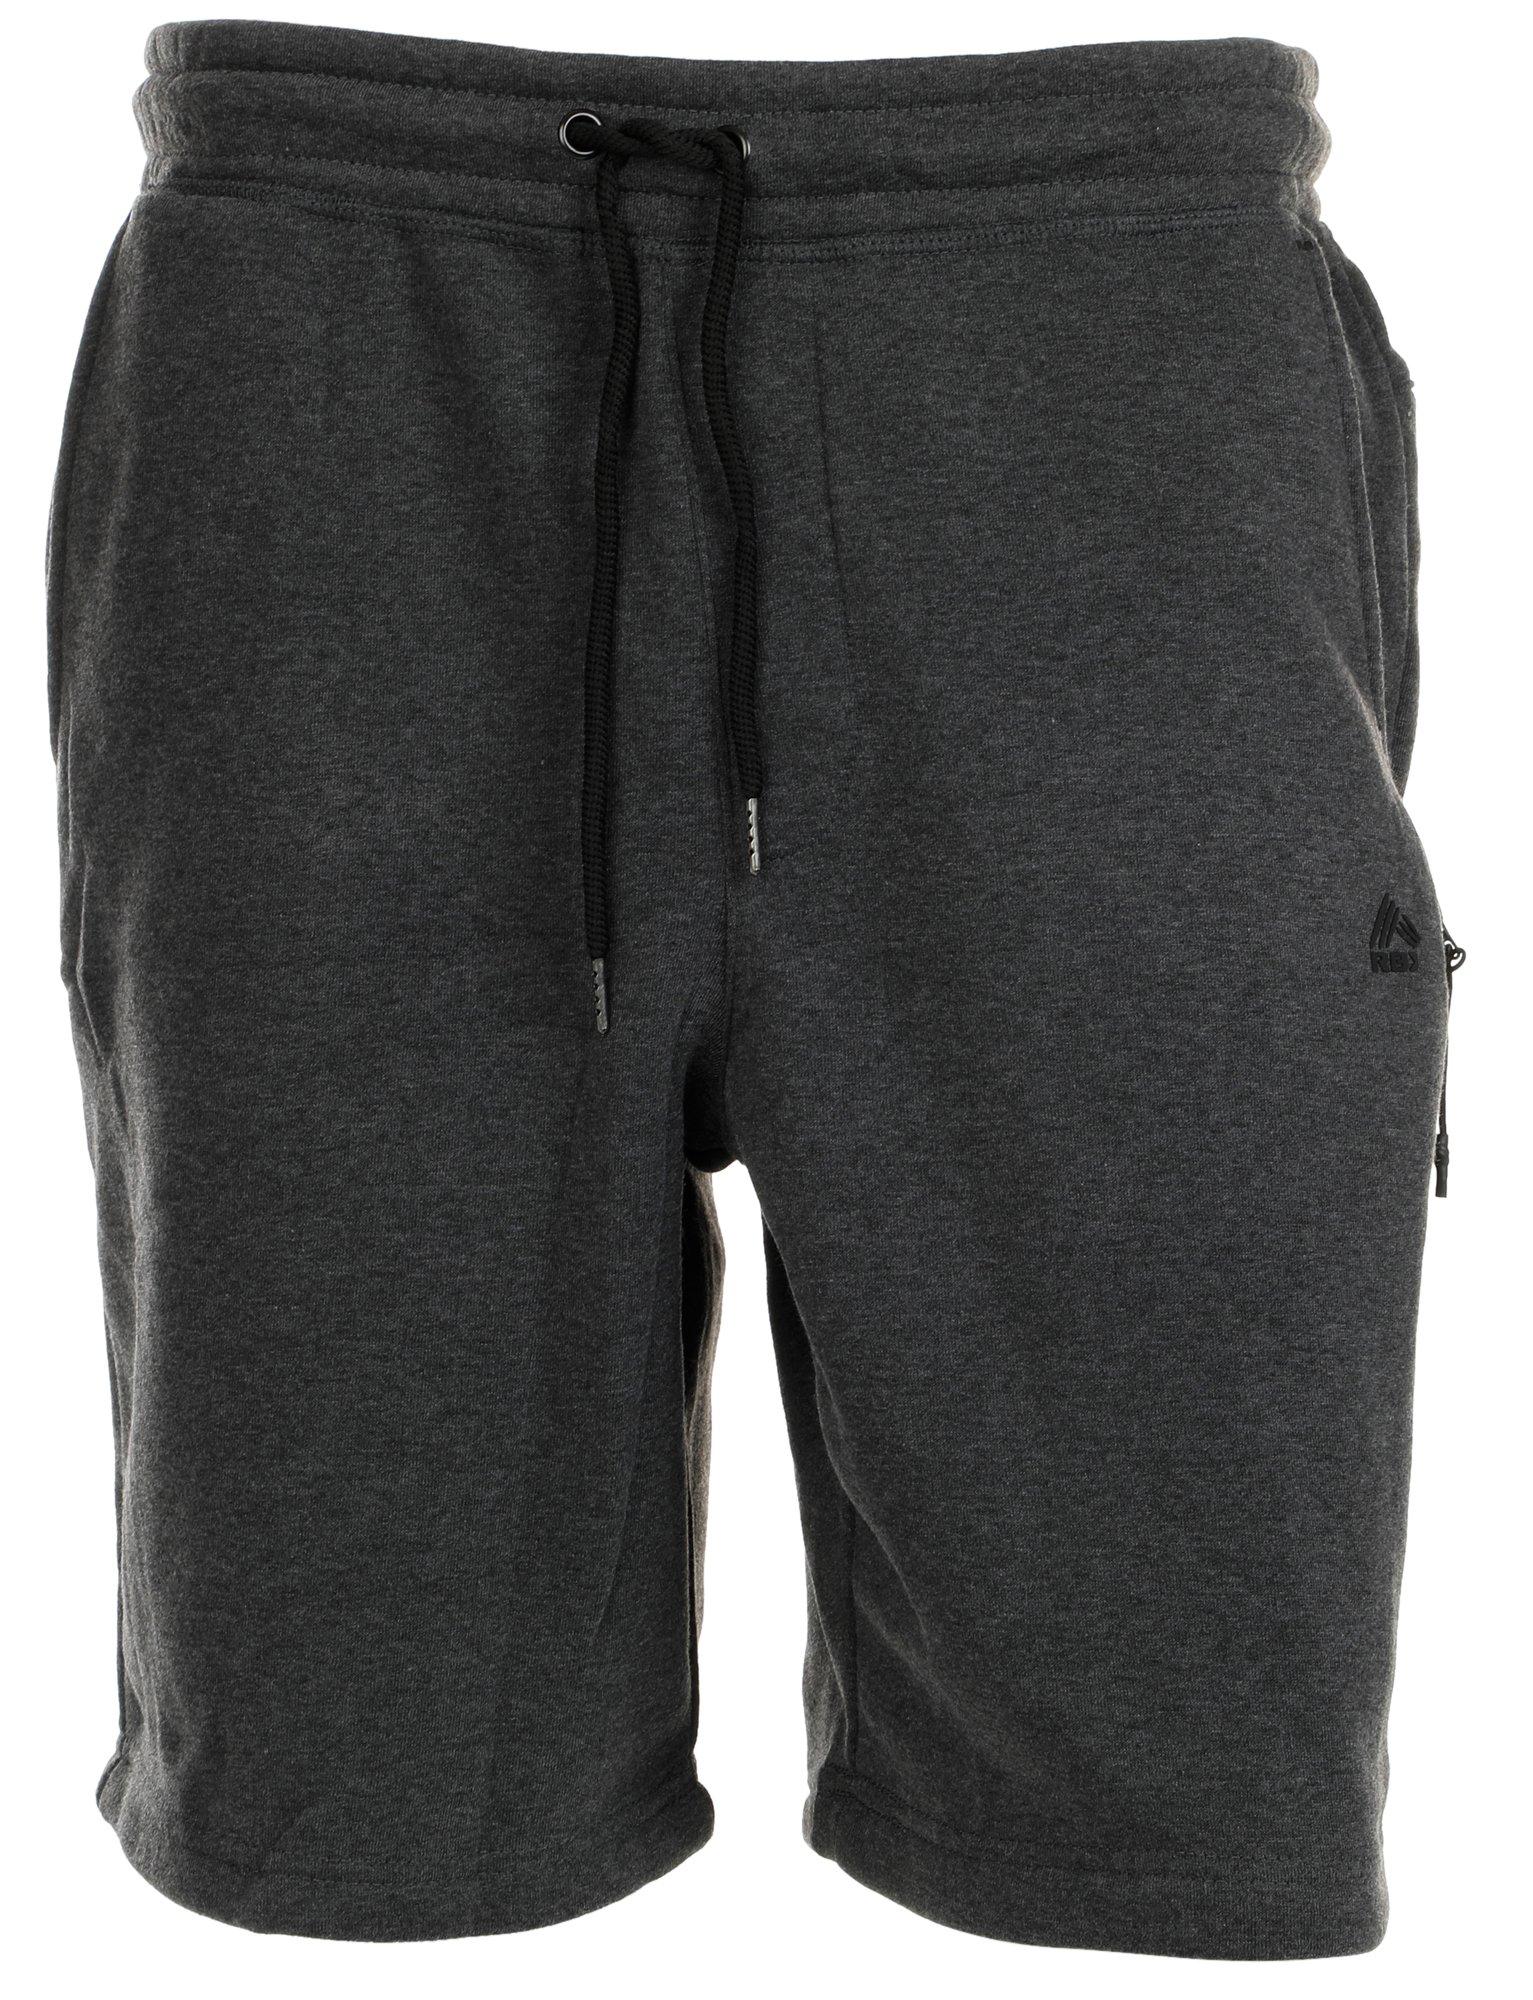 Men's Active Knit Shorts